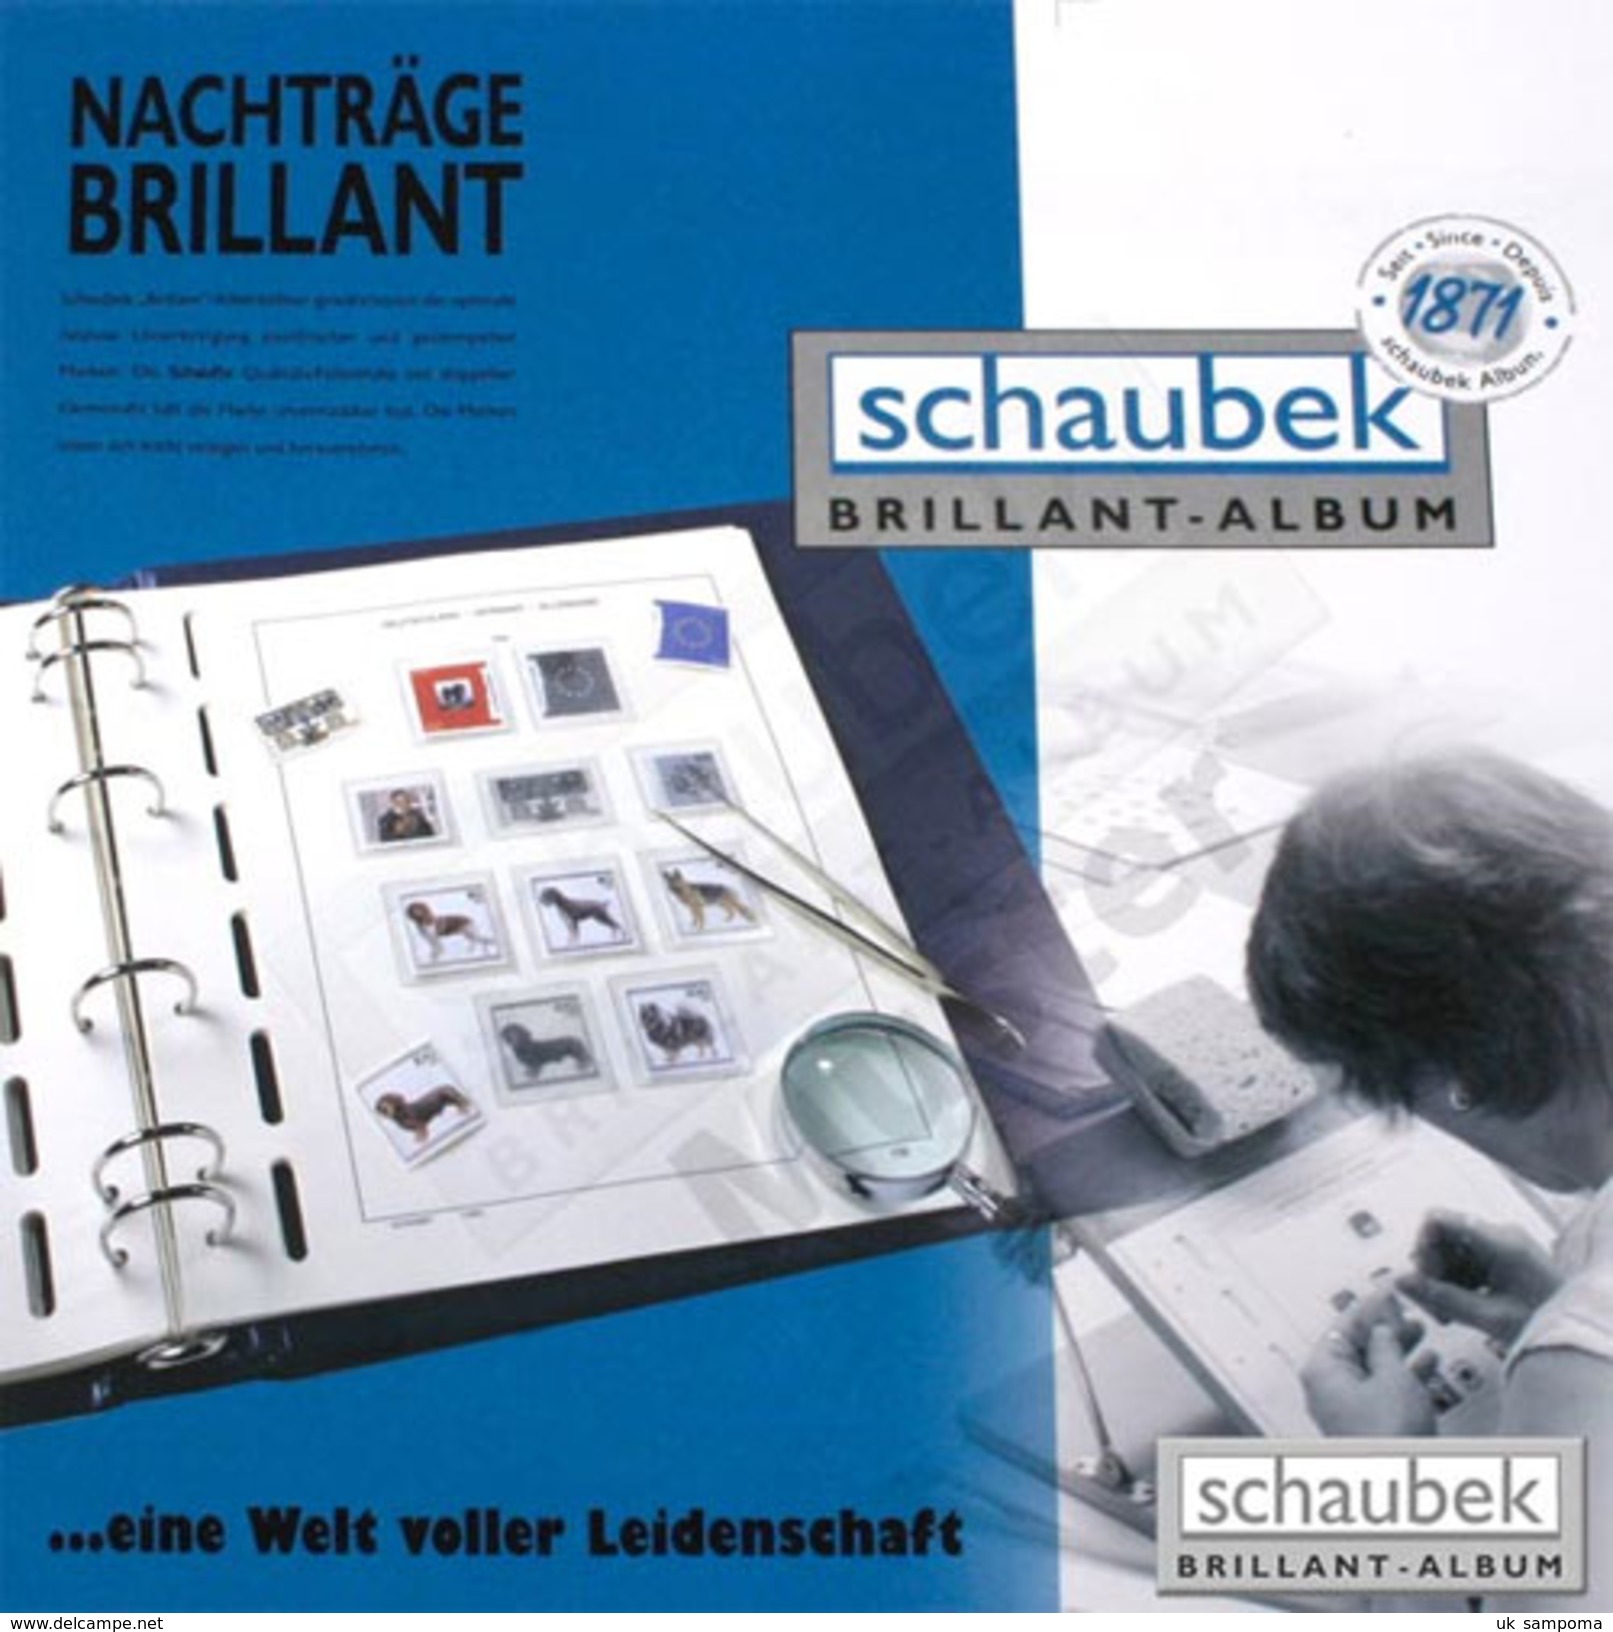 Schaubek A-819/06B Album Italy 2010-2014 Brillant, In A Blue Screw Post Binder, Vol. VI Without Slipcase - Komplettalben